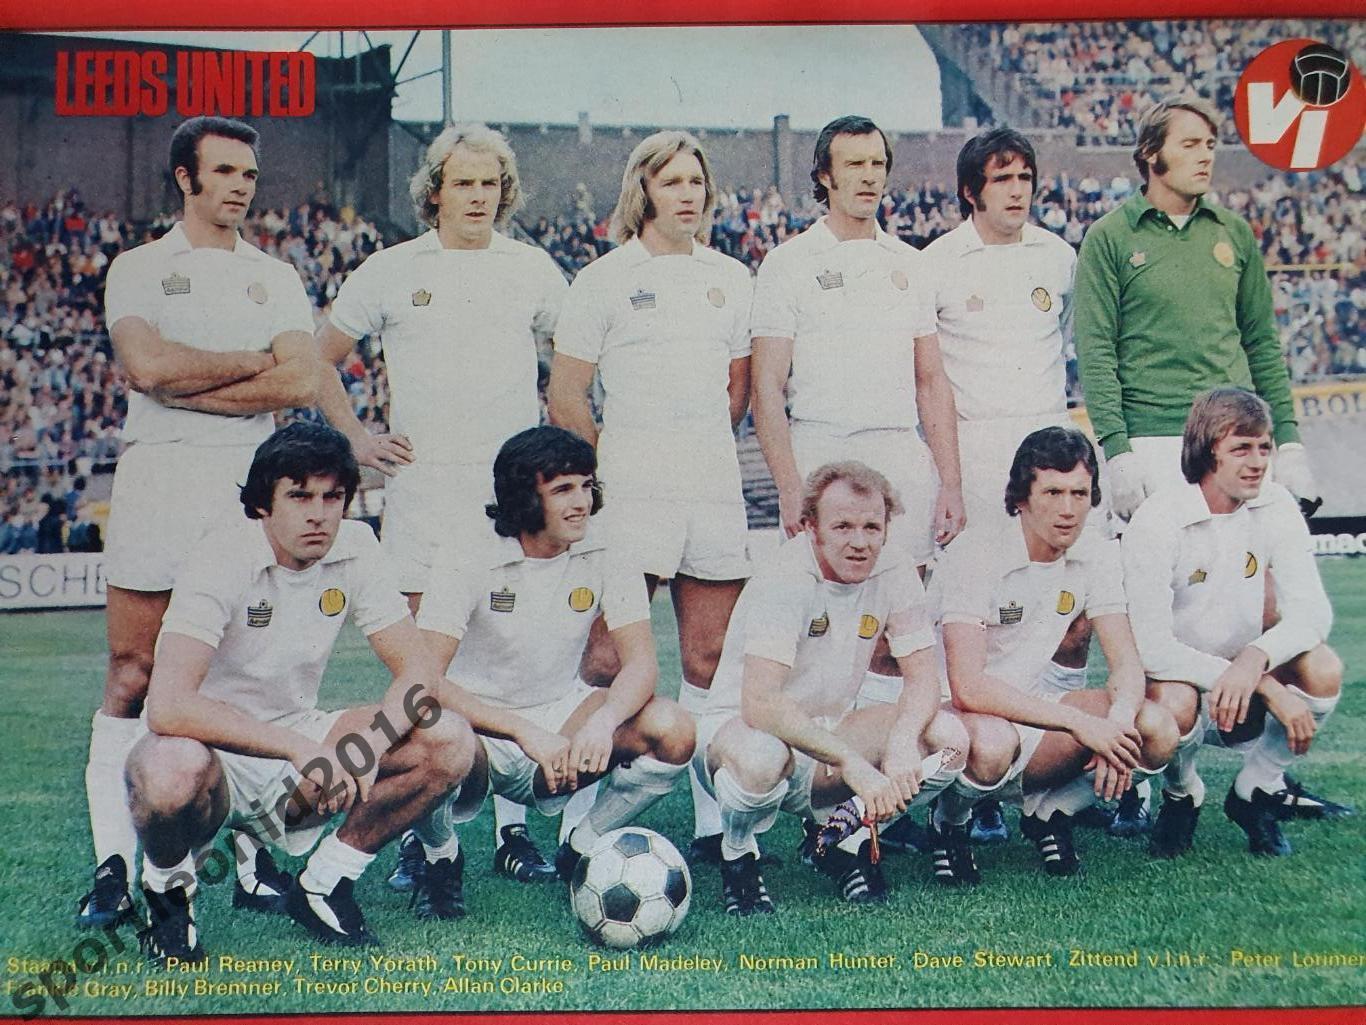 Voetbal International 1977 51 выпуск годовая подписка .2 2